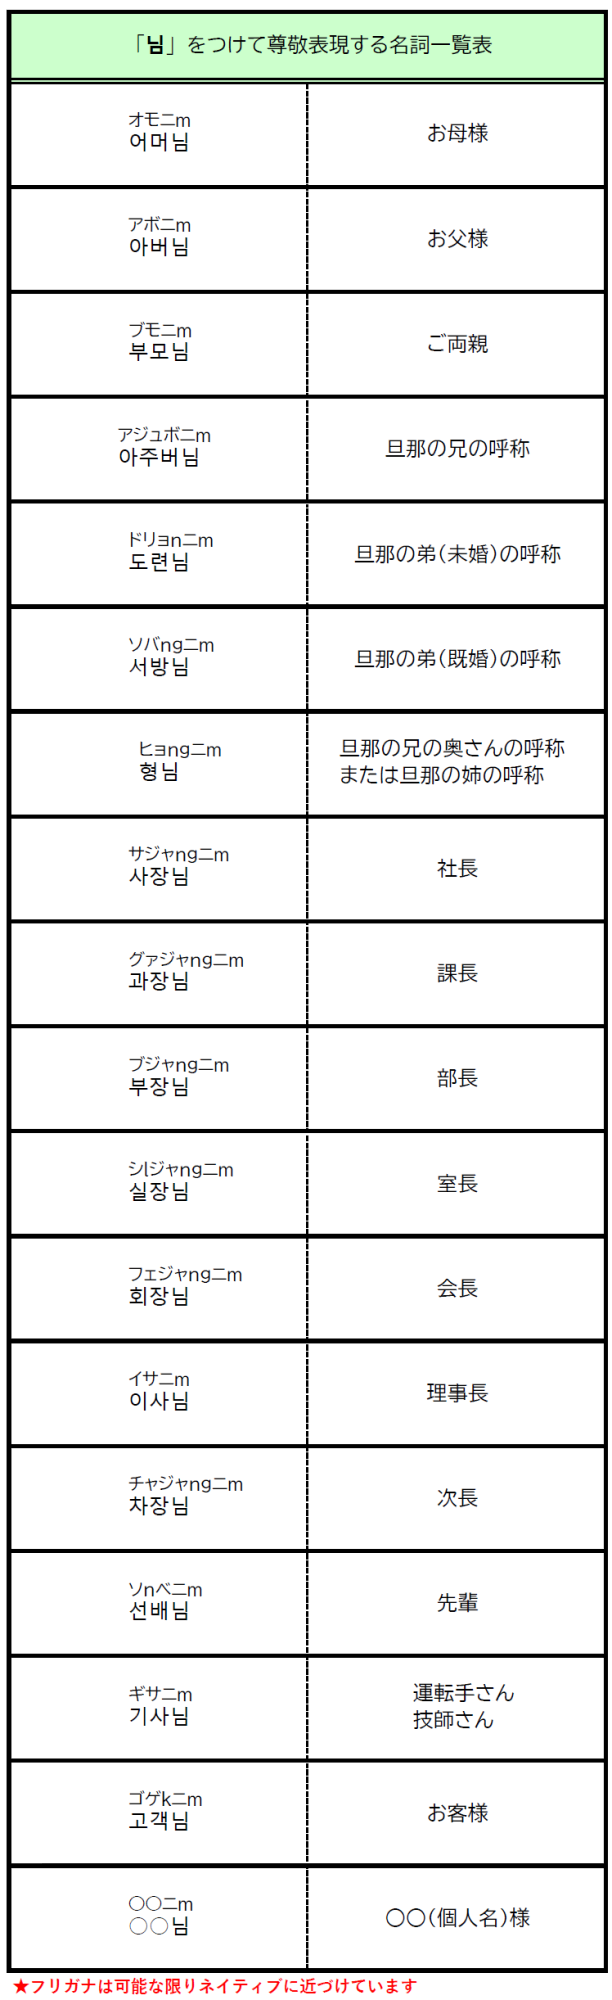 韓国語尊敬化名詞一覧表